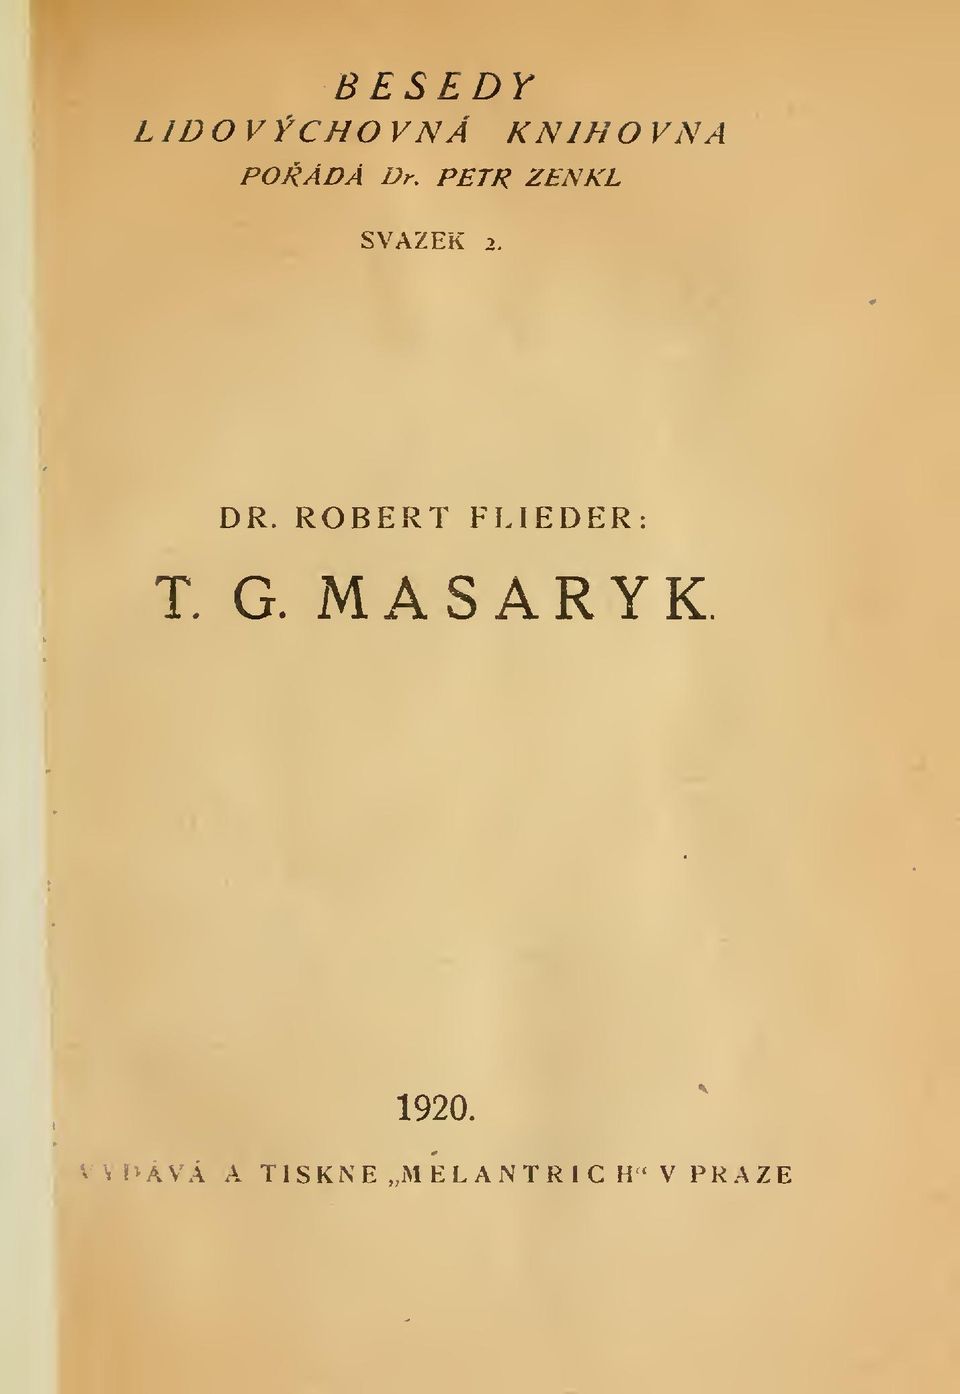 ROBERT FLIEDER: T. G. MASARYK.